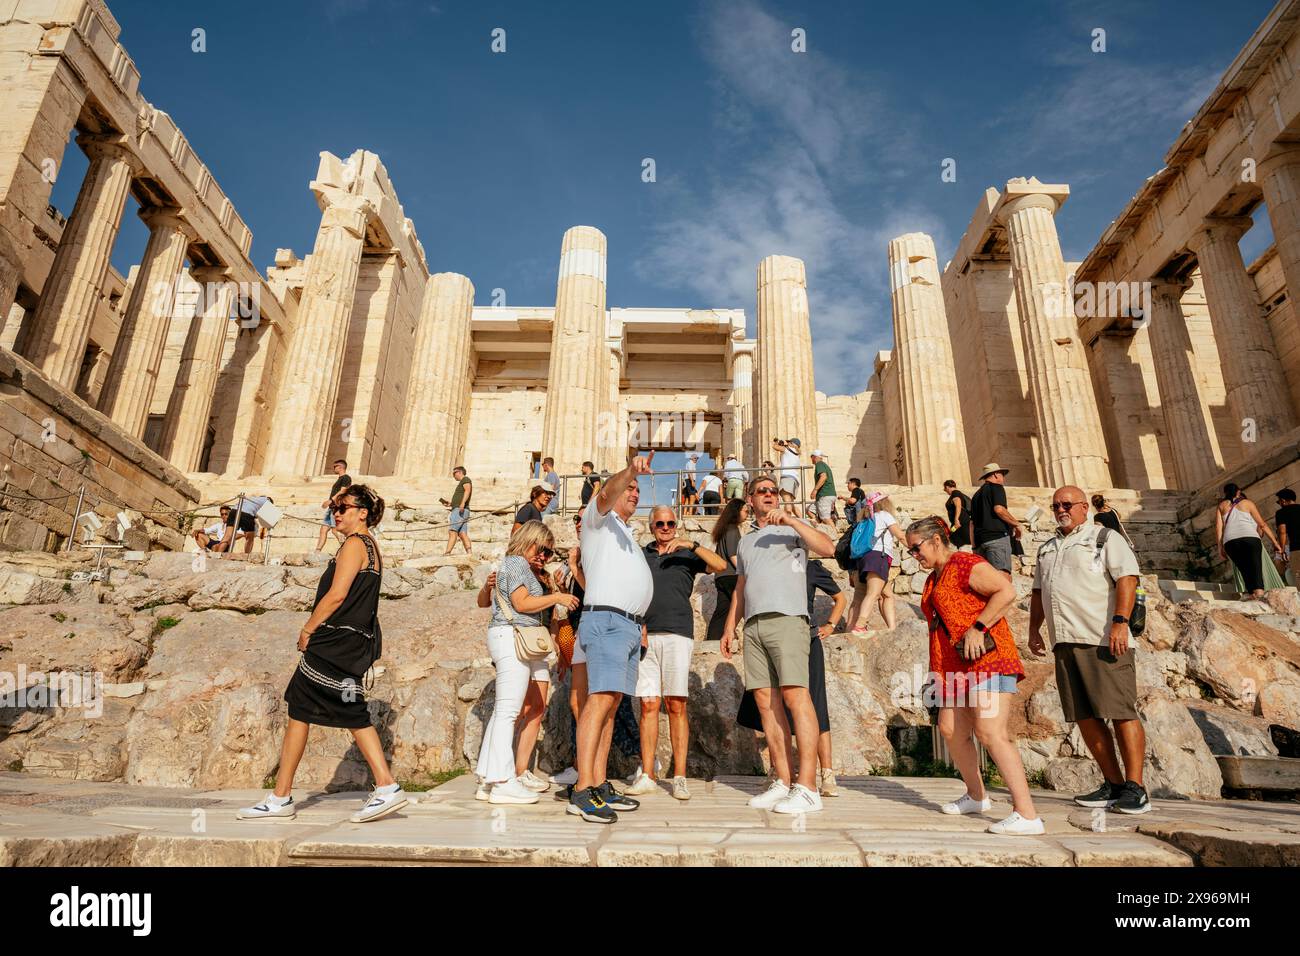 Tourists outside The Parthenon, Acropolis, UNESCO World Heritage Site, Athens, Greece, Europe Stock Photo